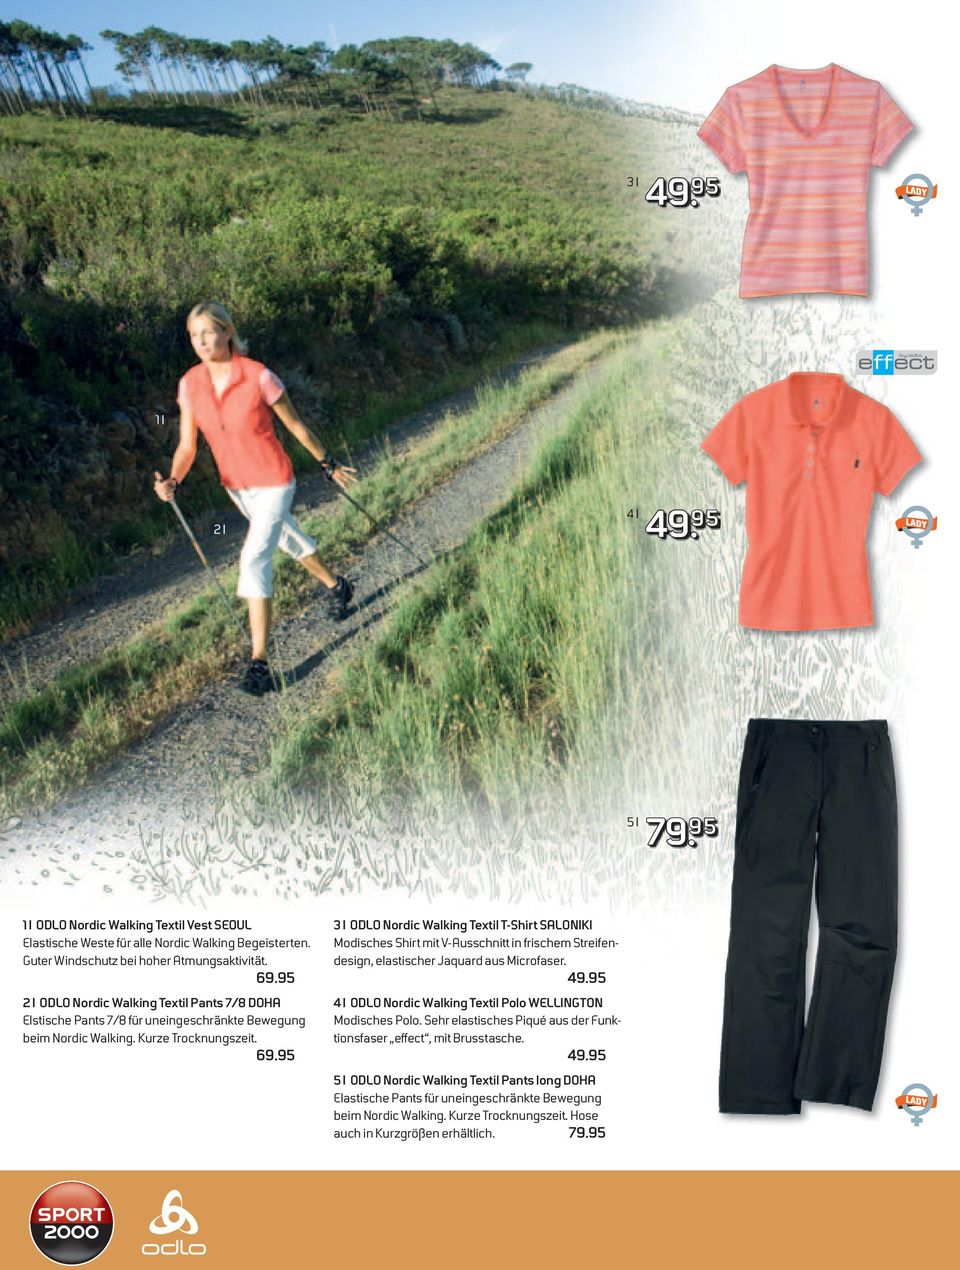 95 3 I ODLO Nordic Walking Textil T-Shirt SALONIKI Modisches Shirt mit V-Ausschnitt in frischem Streifendesign, elastischer Jaquard aus Microfaser. 49.